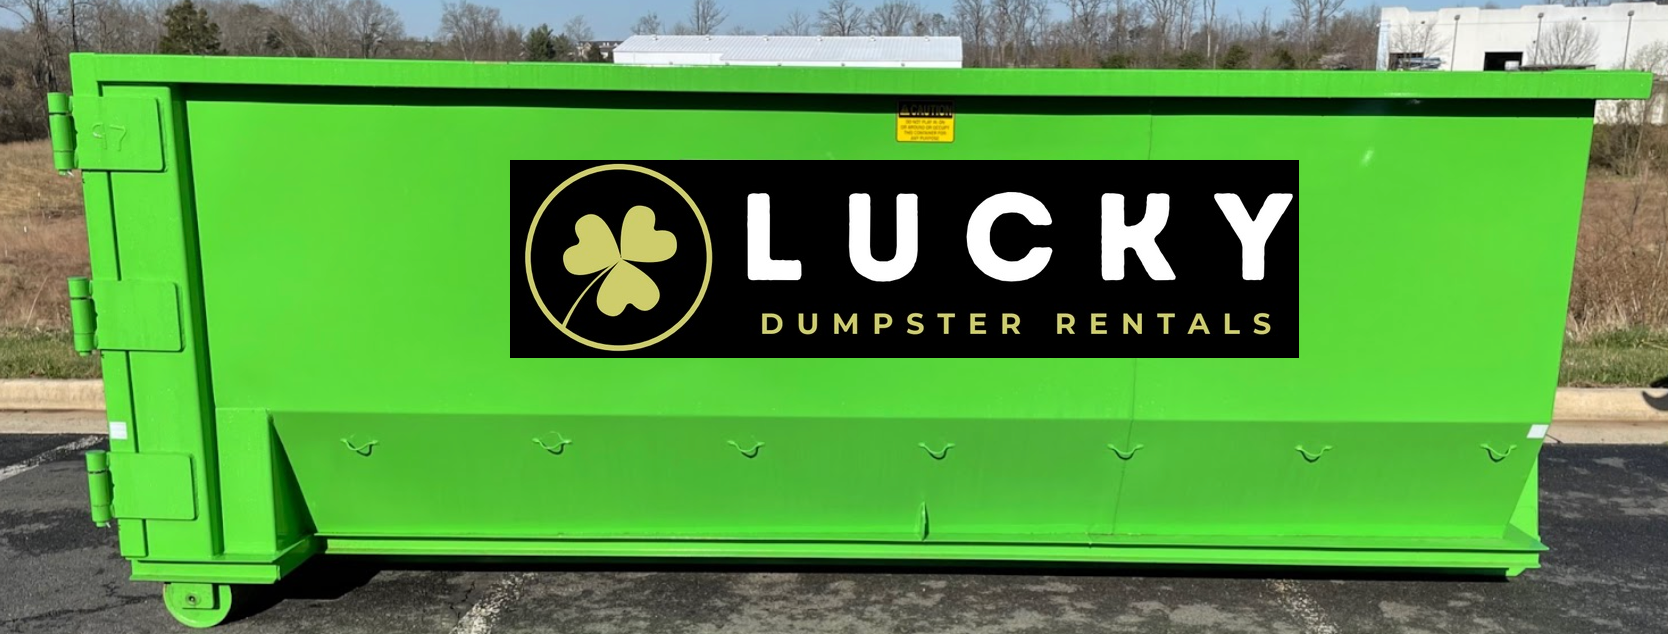 Newnan Dumpster Rental - Lucky Dumpster Rentals of Newnan, GA